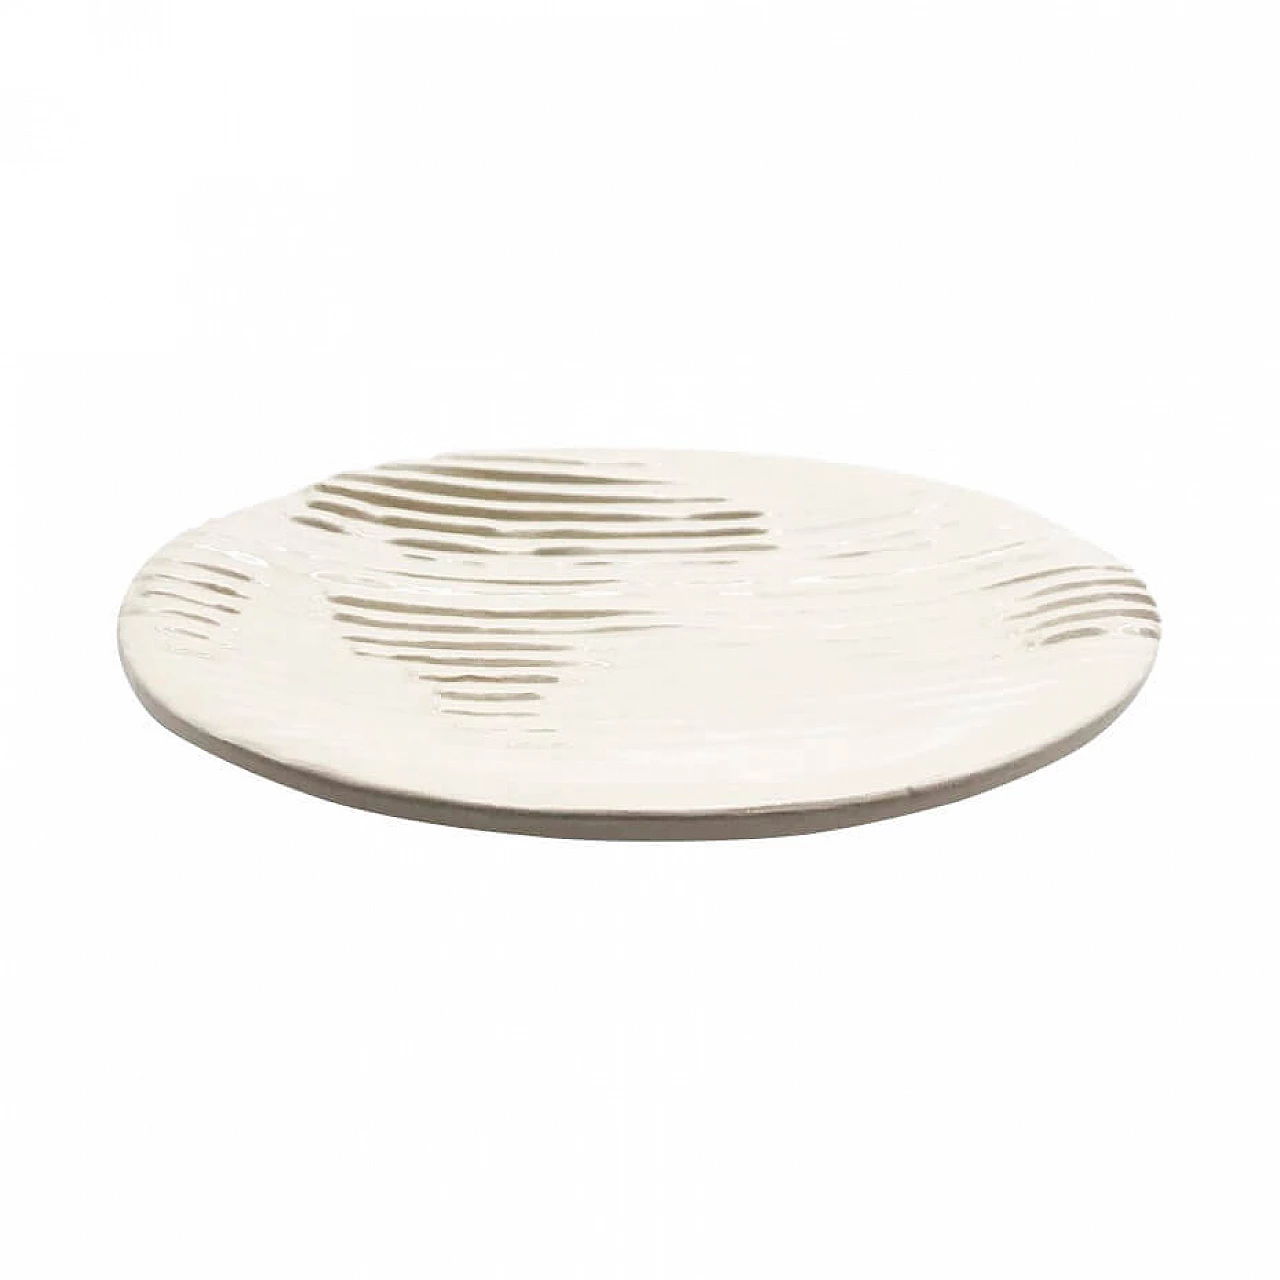 Piattino in ceramica smaltata bianca, produzione OVO 1082056